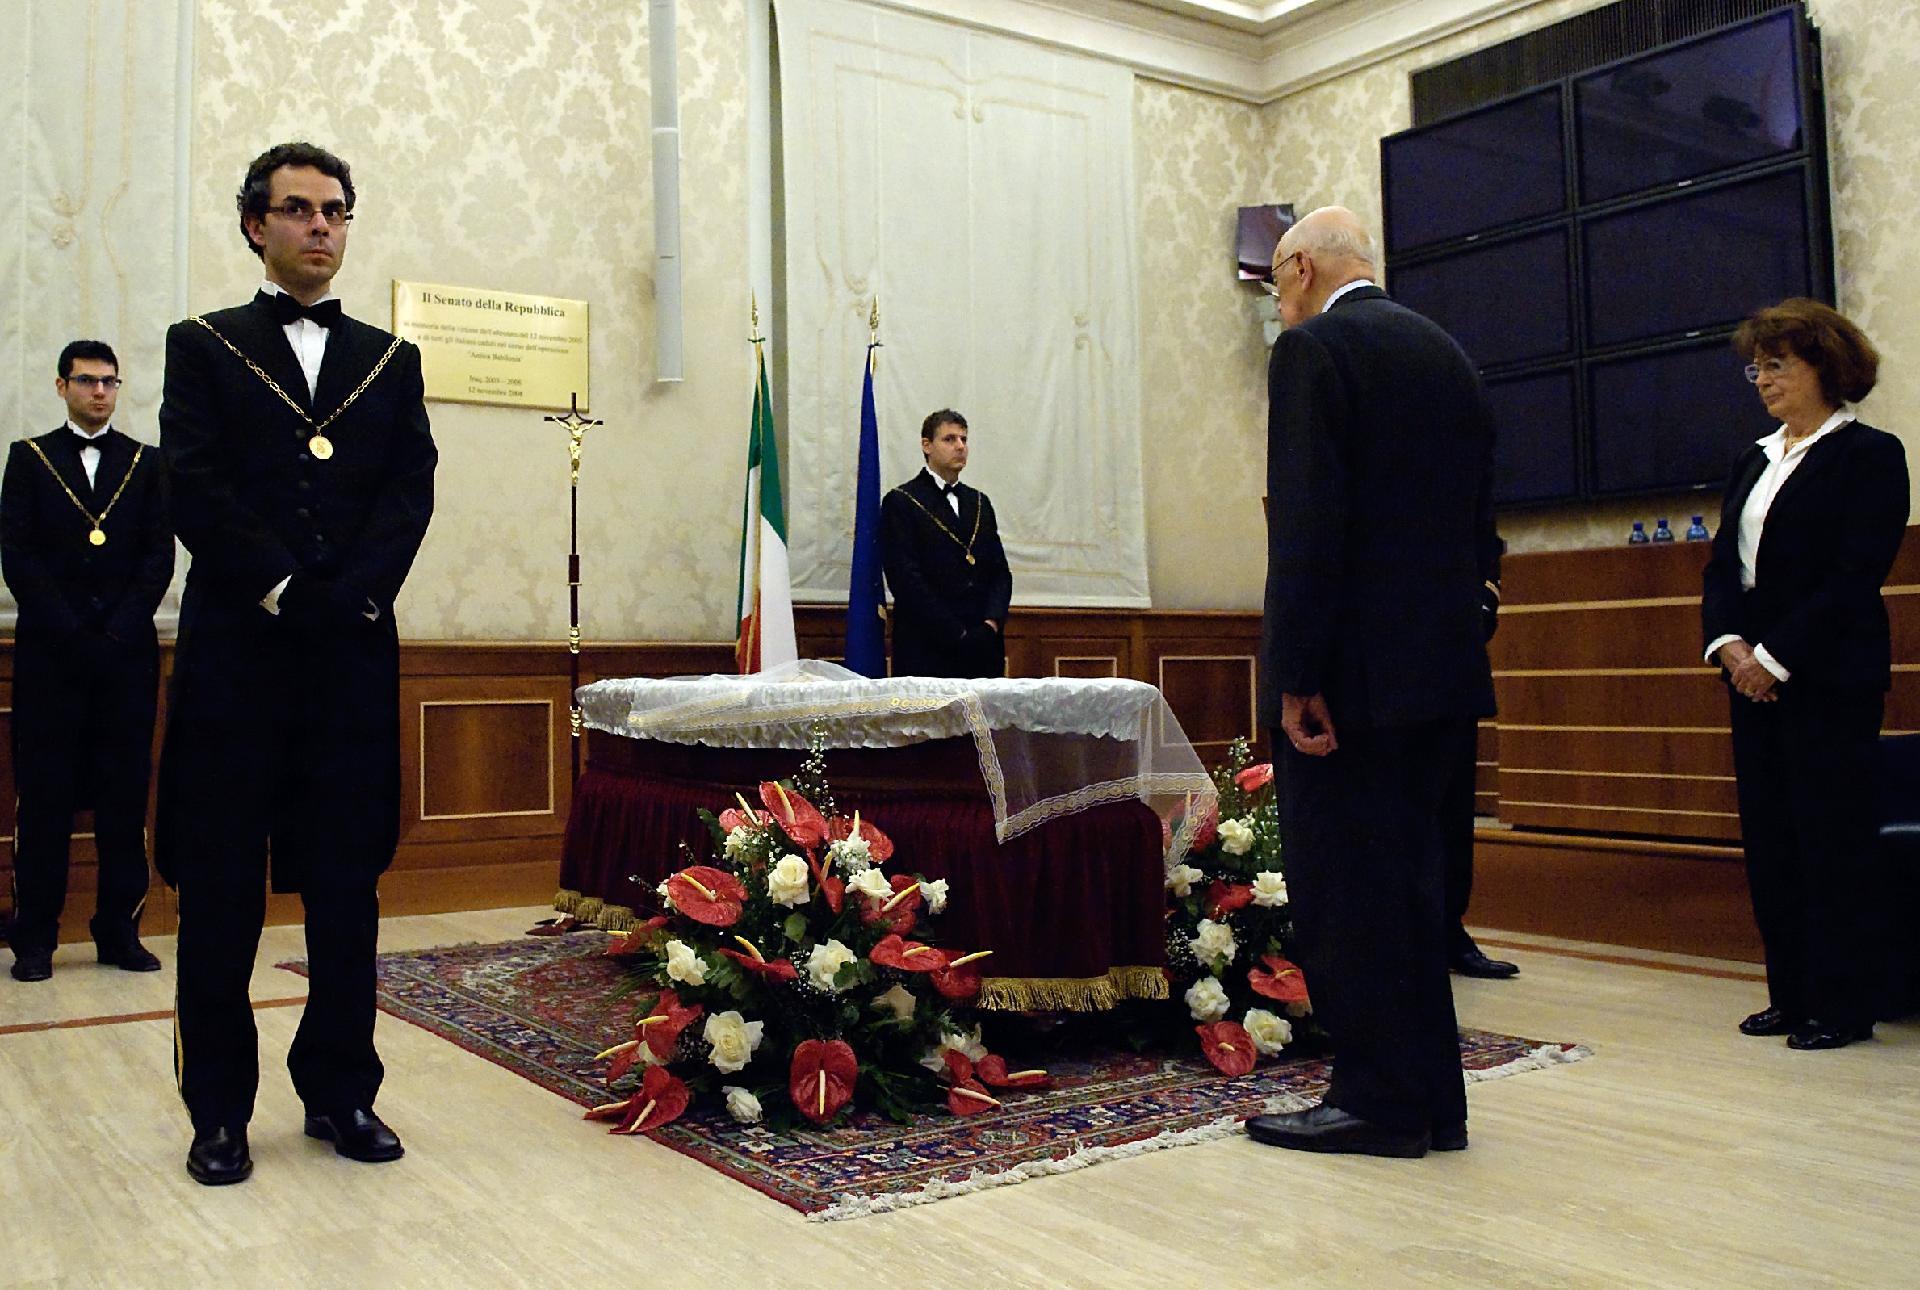 Il Presidente Giorgio Napolitano rende omaggio alla salma del Sen. Giampiero Cantoni, a fianco la vedova Sig.ra Emilia